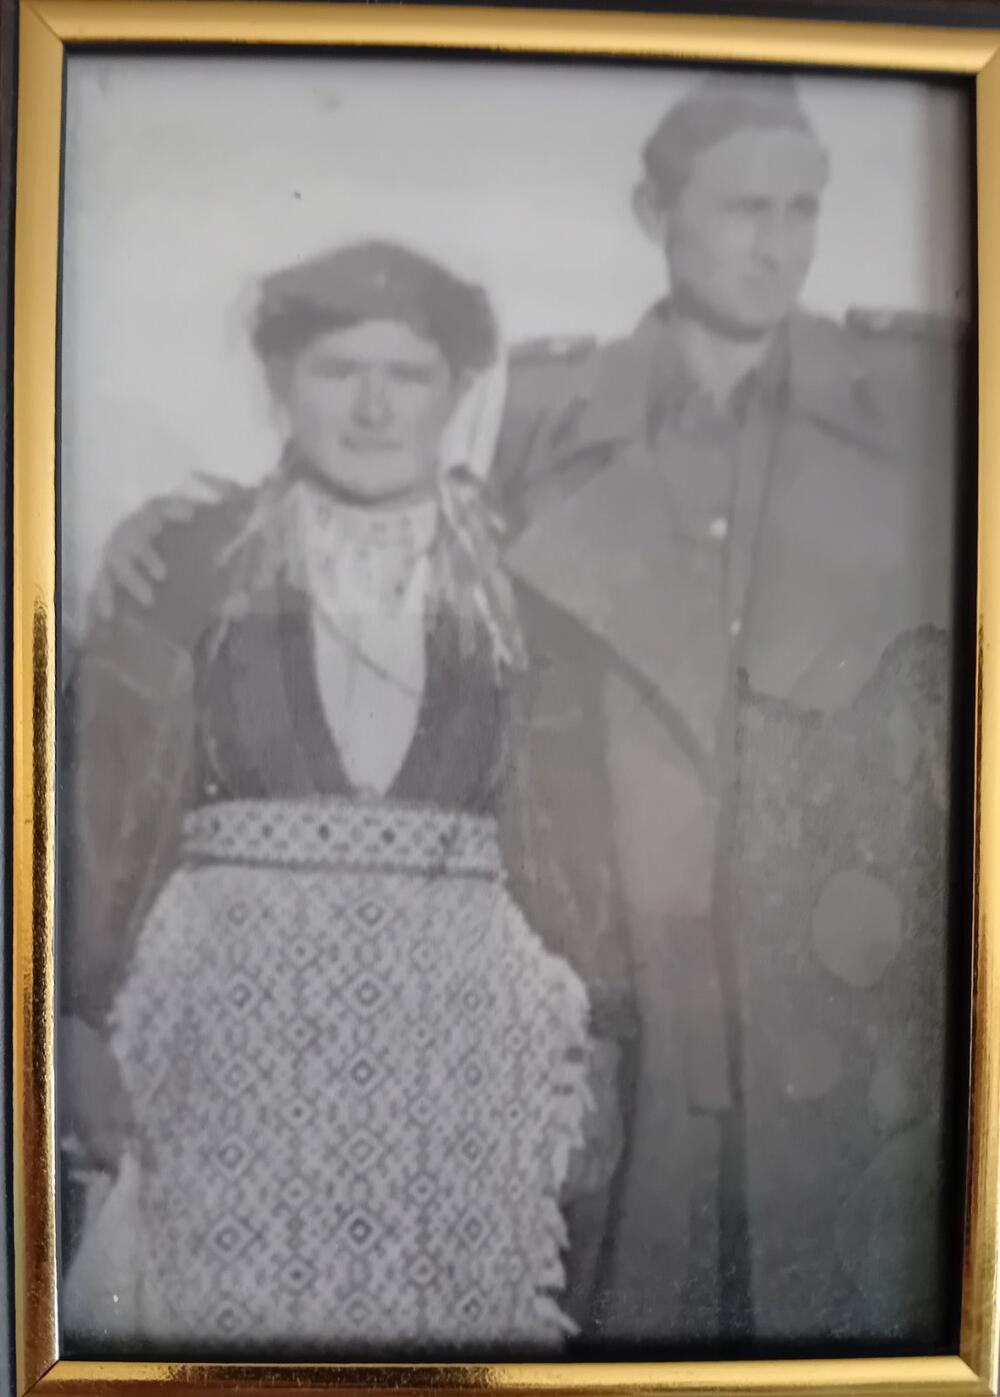 ANĐA VUKOVIĆ AND HER HUSBAND